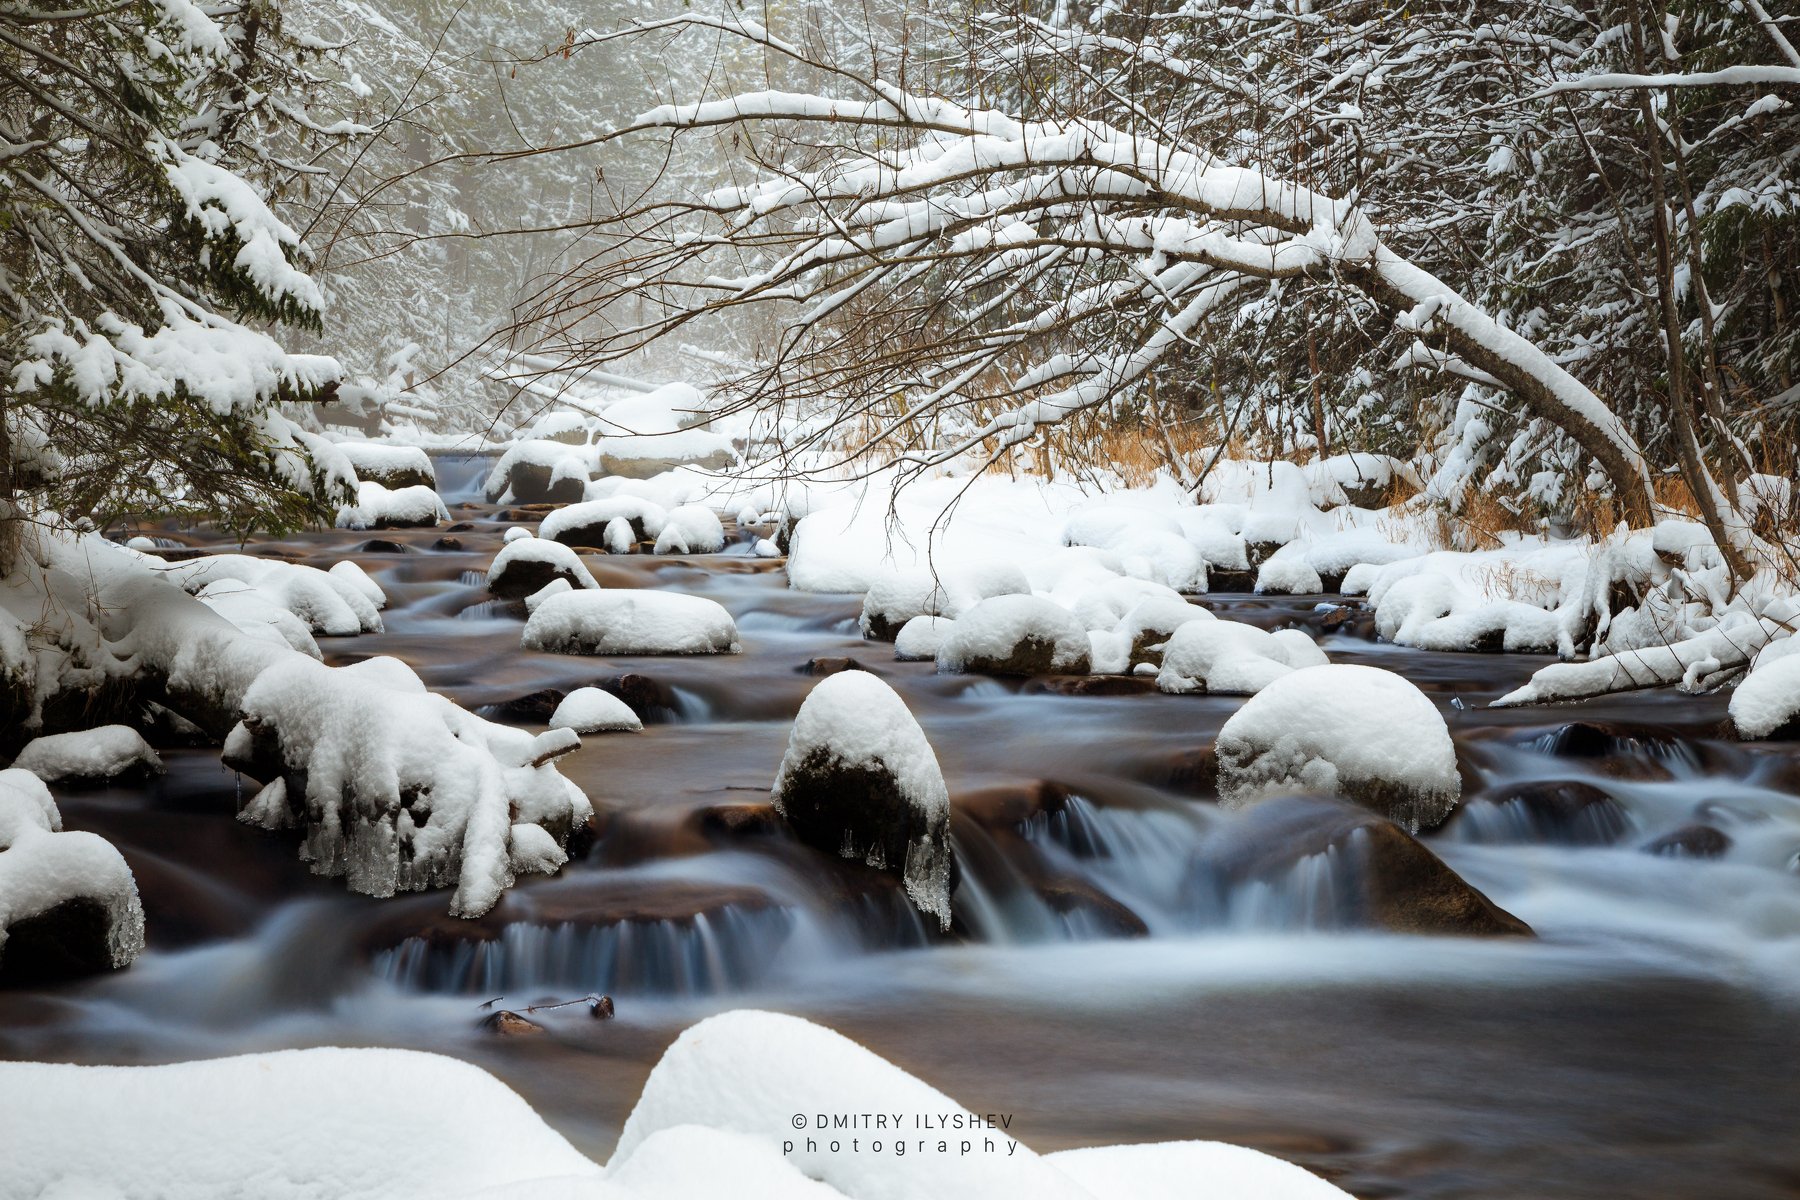 жигалан, северный урал, река жигана, первый снег, Dmitry Ilyshev